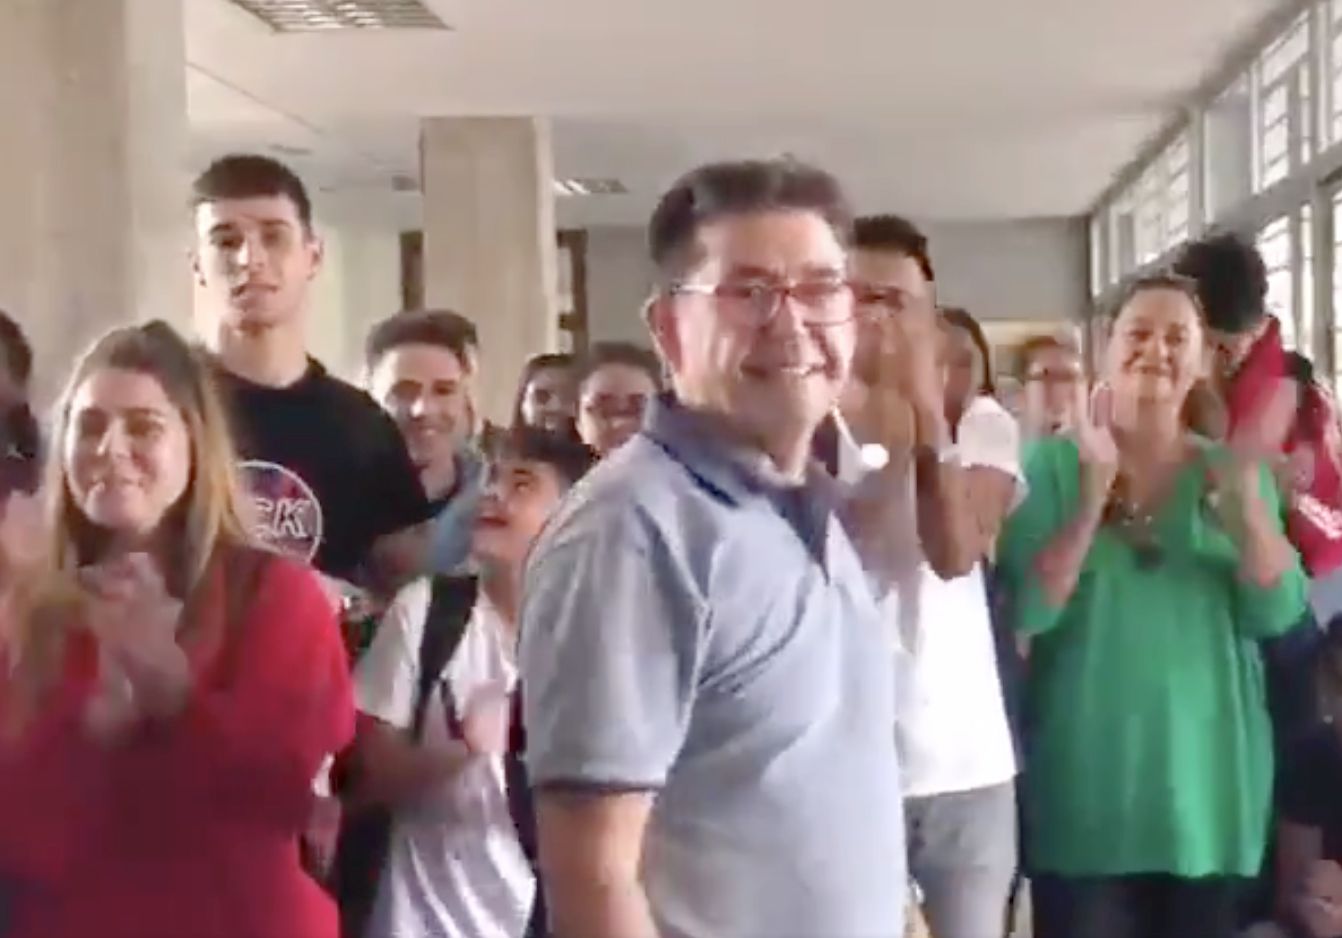 La emotiva despedida de unos alumnos a su profesor que se jubila se hace viral